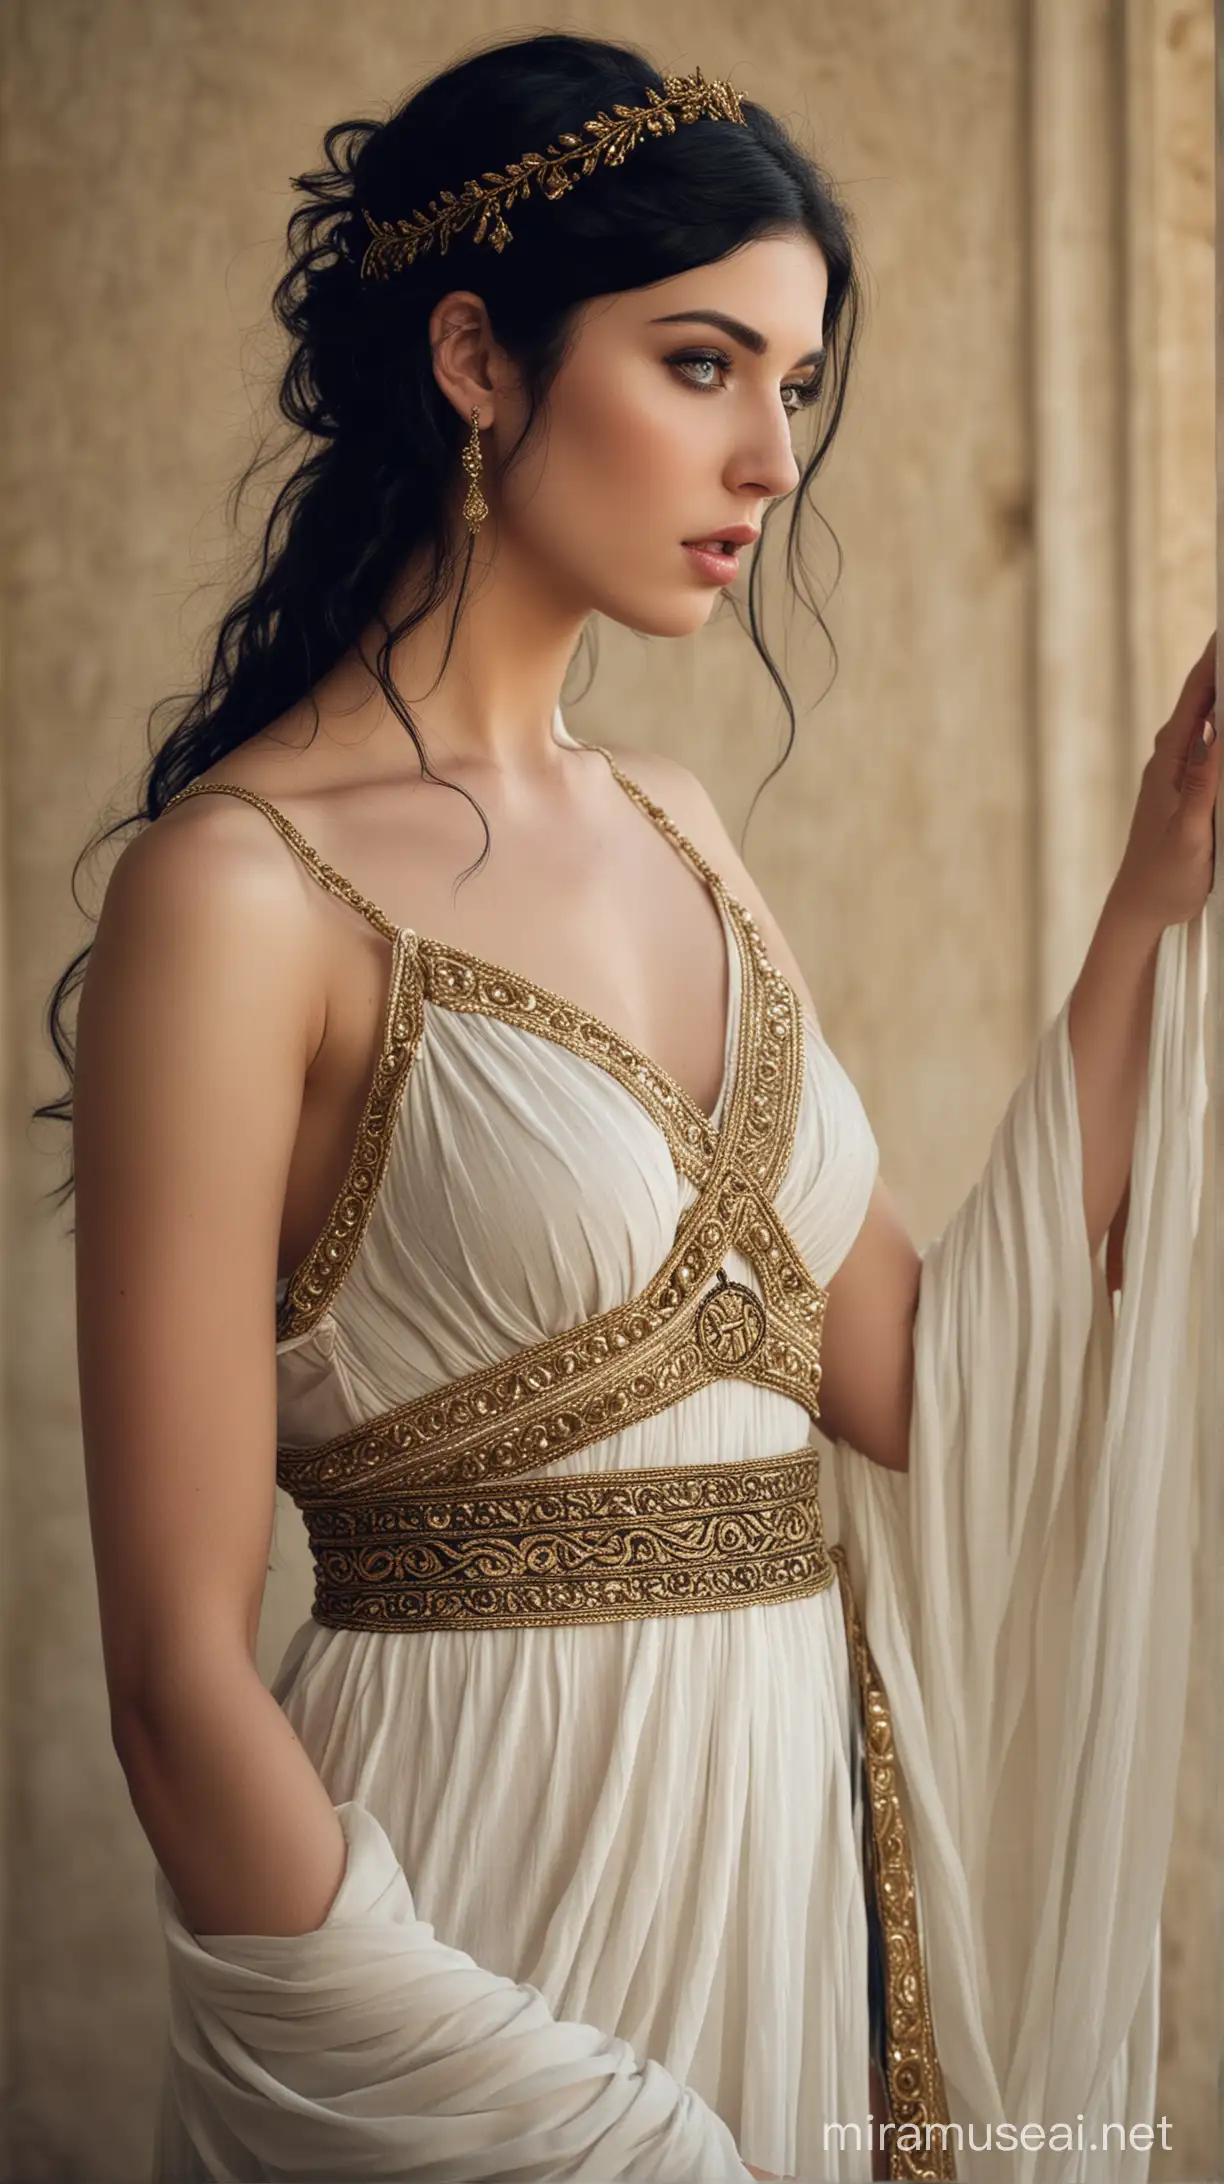 Medea, piel clara, cabello negro, vestimenta sensual griega